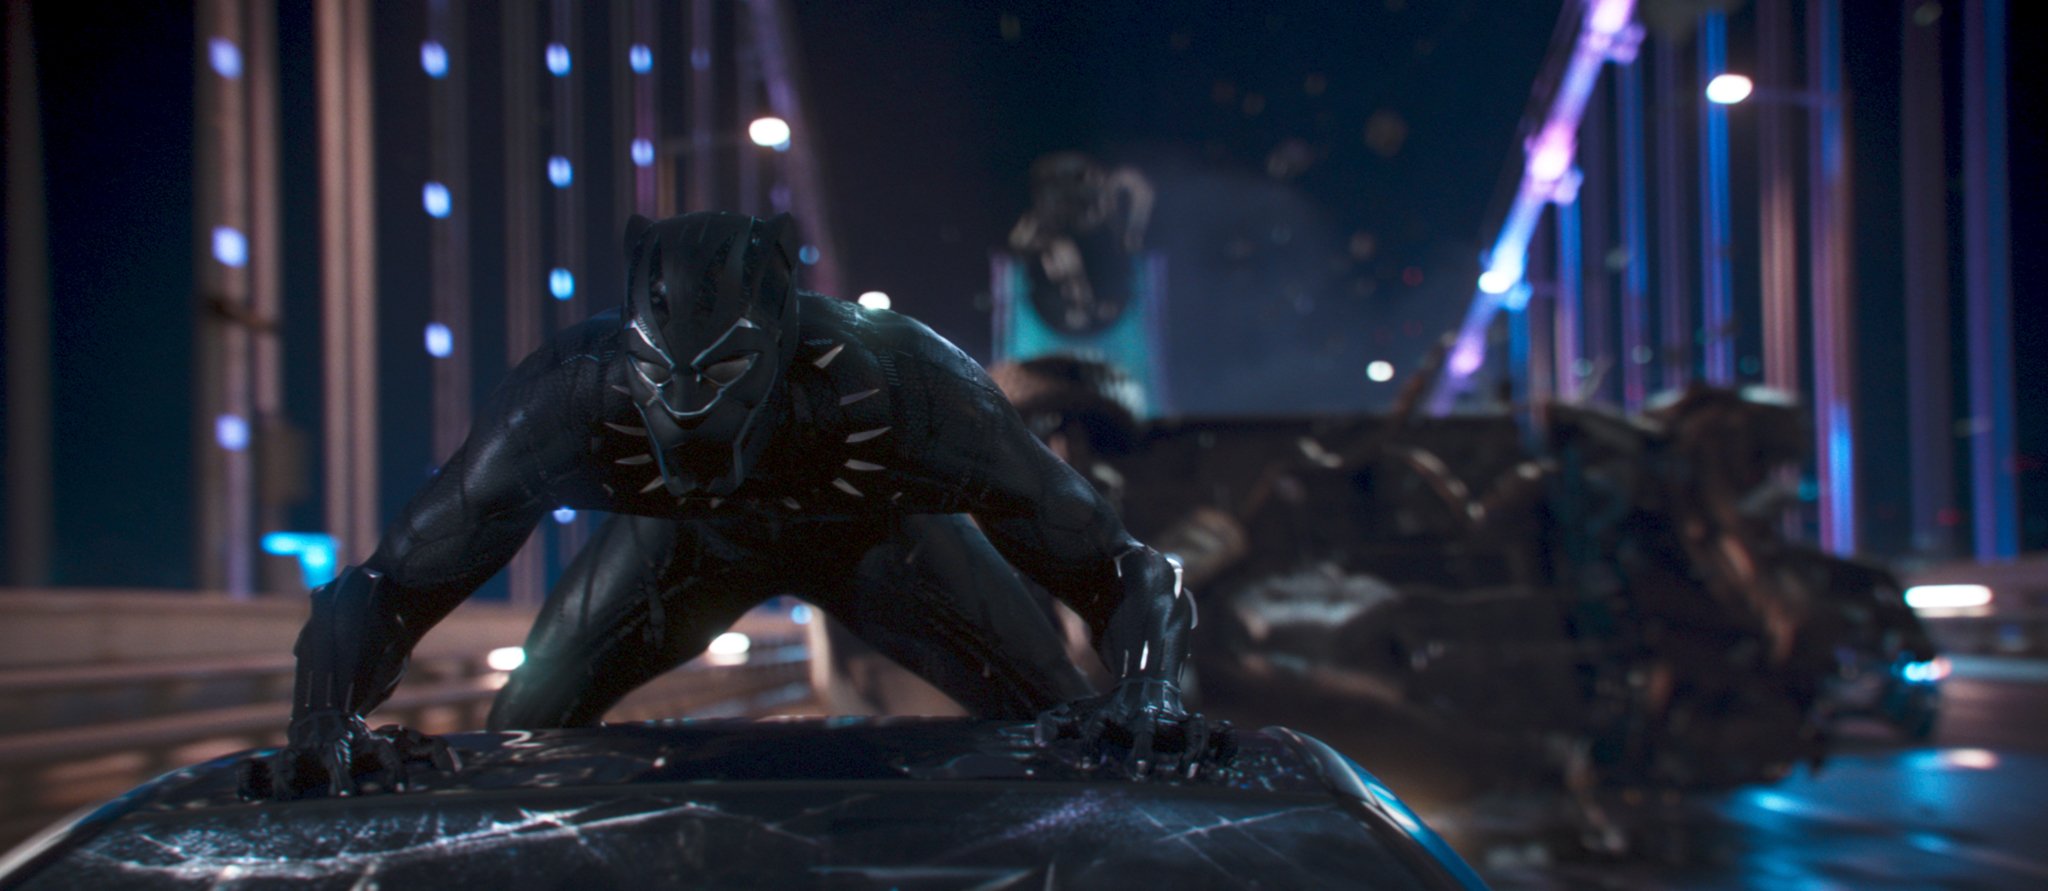 Black Panther dengan Kekuatannya - IMDb